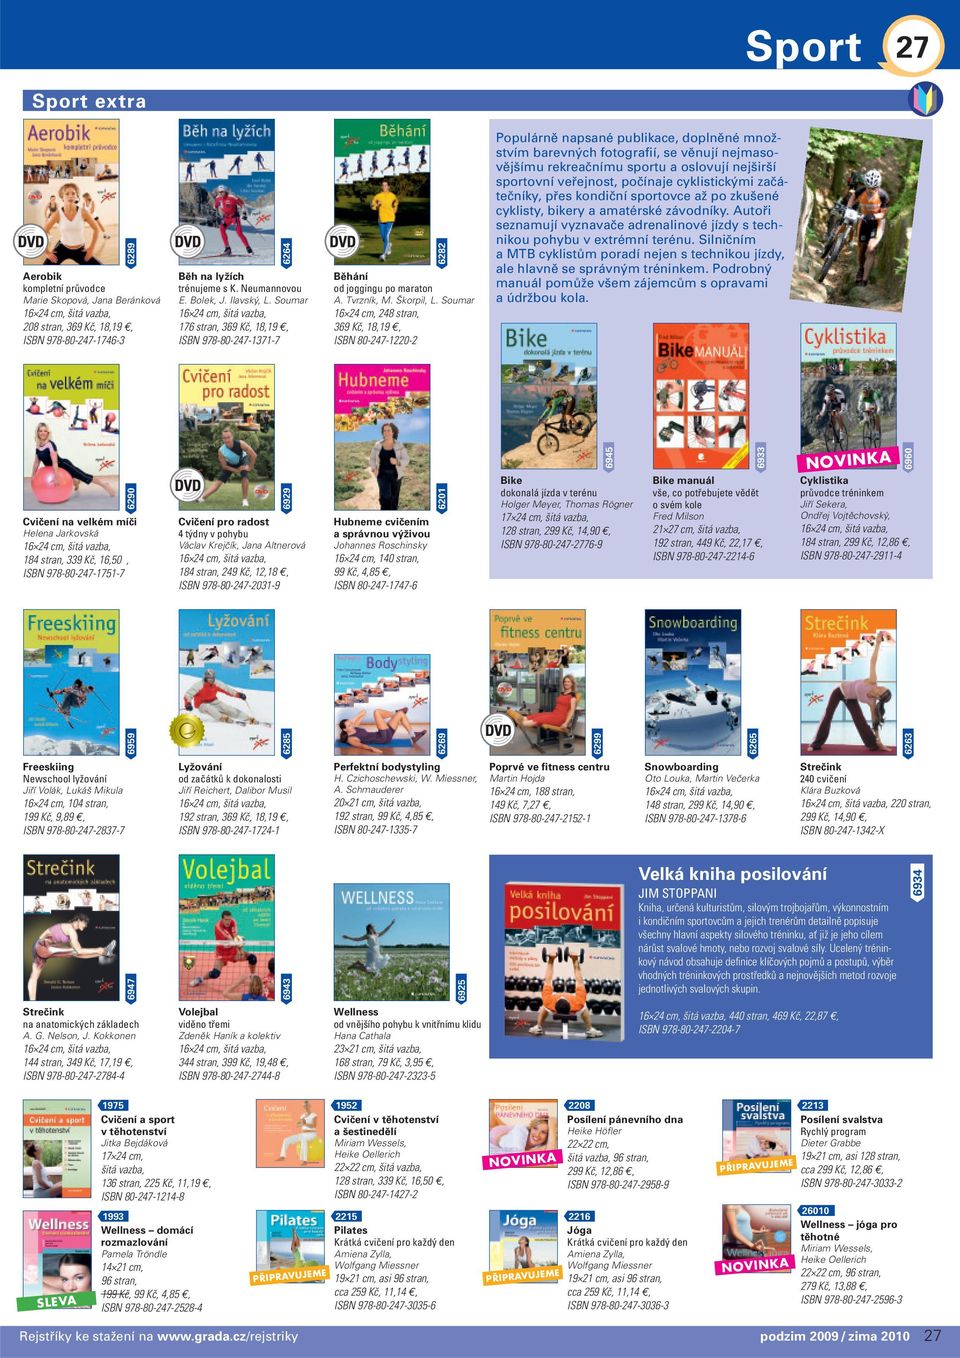 Soumar 16 24 cm, 248 stran, 369 Kč, 18,19, ISBN 80-247-1220-2 Populárně napsané publikace, doplněné množstvím barevných fotografií, se věnují nejmasovějšímu rekreačnímu sportu a oslovují nejširší